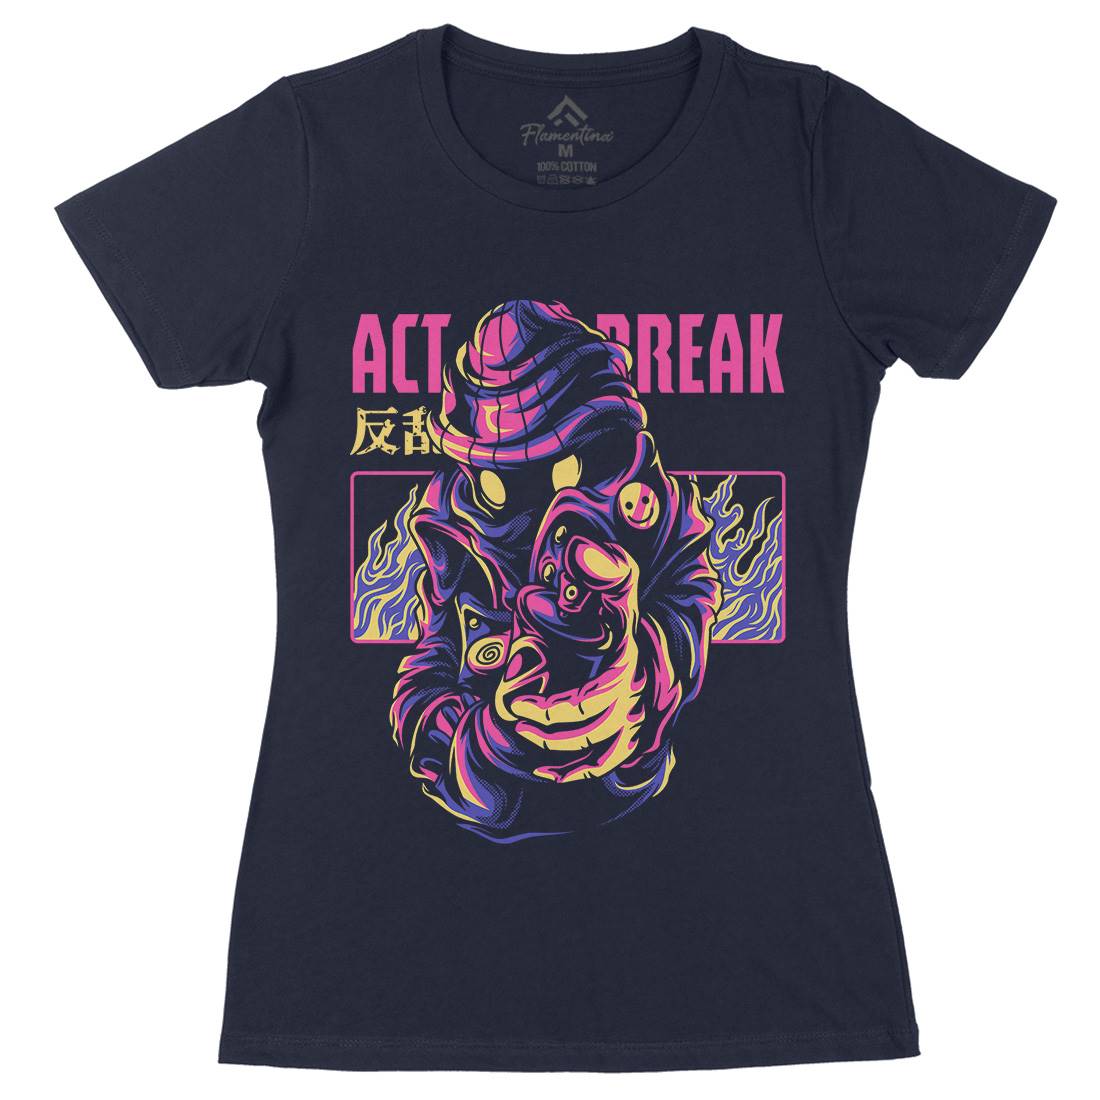 Act Break Womens Organic Crew Neck T-Shirt Graffiti D700